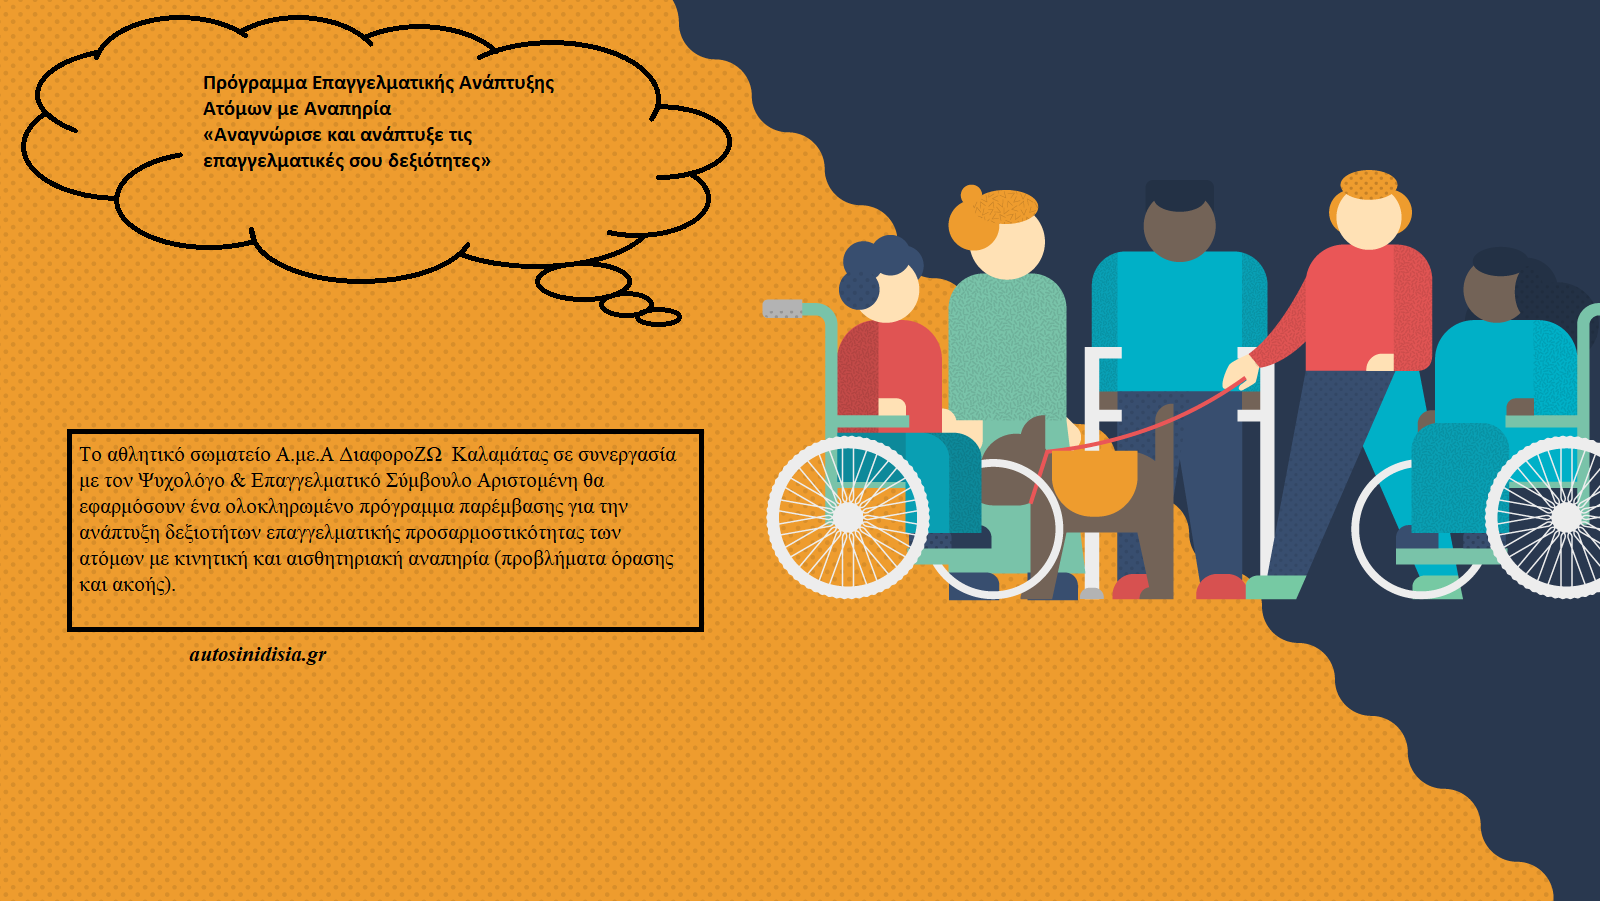 Πρόγραμμα Επαγγελματικής Ανάπτυξης Ατόμων με Αναπηρία «Αναγνώρισε και ανάπτυξε τις επαγγελματικές σου δεξιότητες»